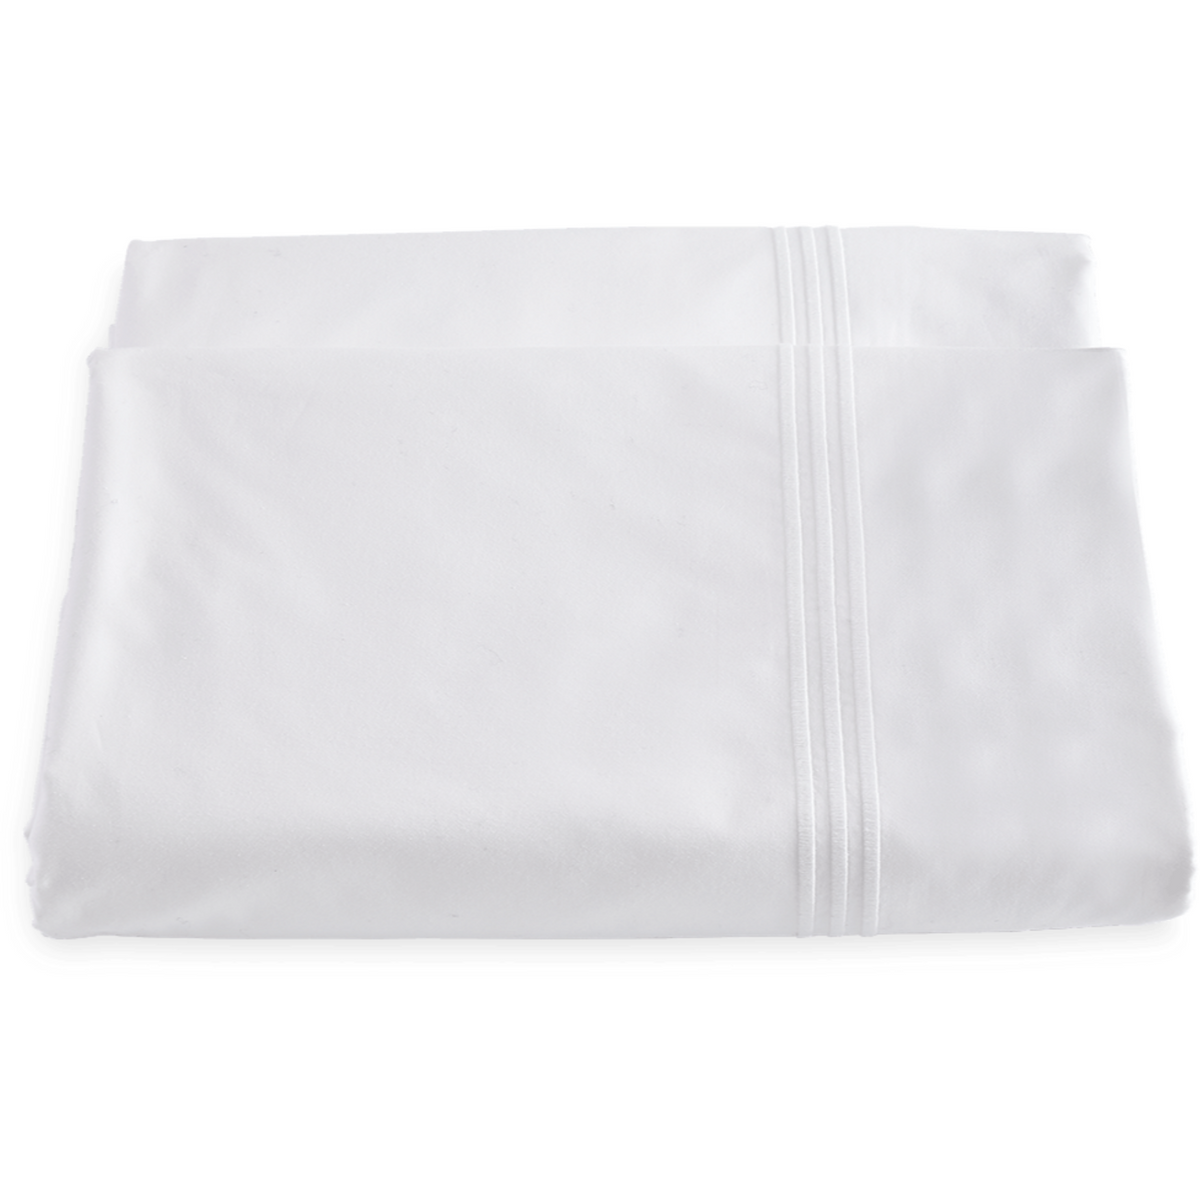 Matouk Bel Tempo Bedding Duvet Cover White Fine Linens